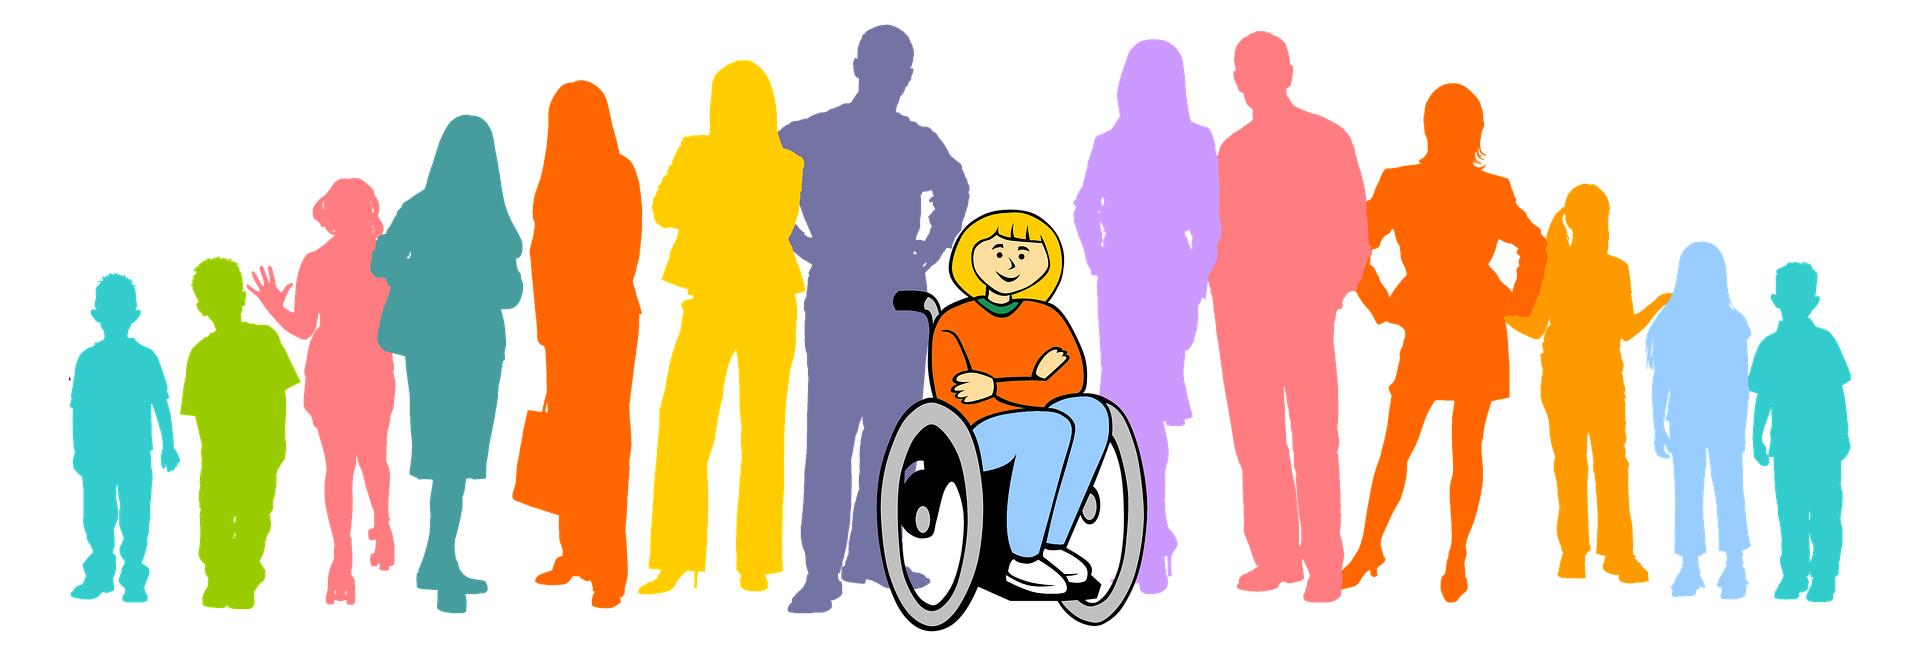 Доступность интеграция. Люди с ограниченными возможностями картинки. Социализация людей с инвалидностью. Люди с ОВЗ. Общество инвалидов.